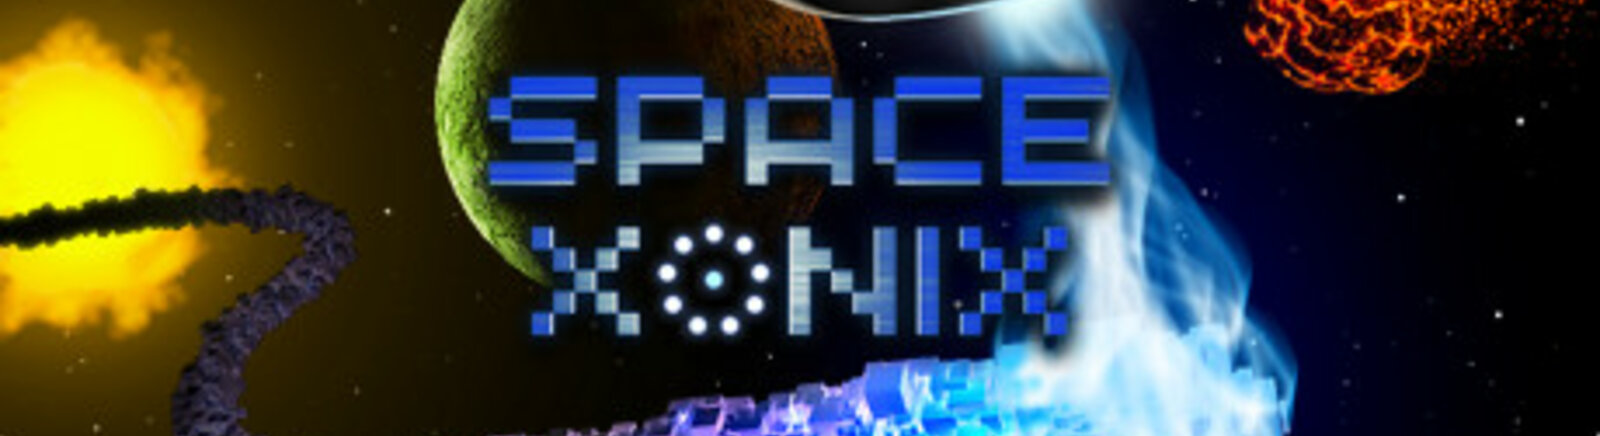 Дата выхода Space Xonix  на PC и Android в России и во всем мире